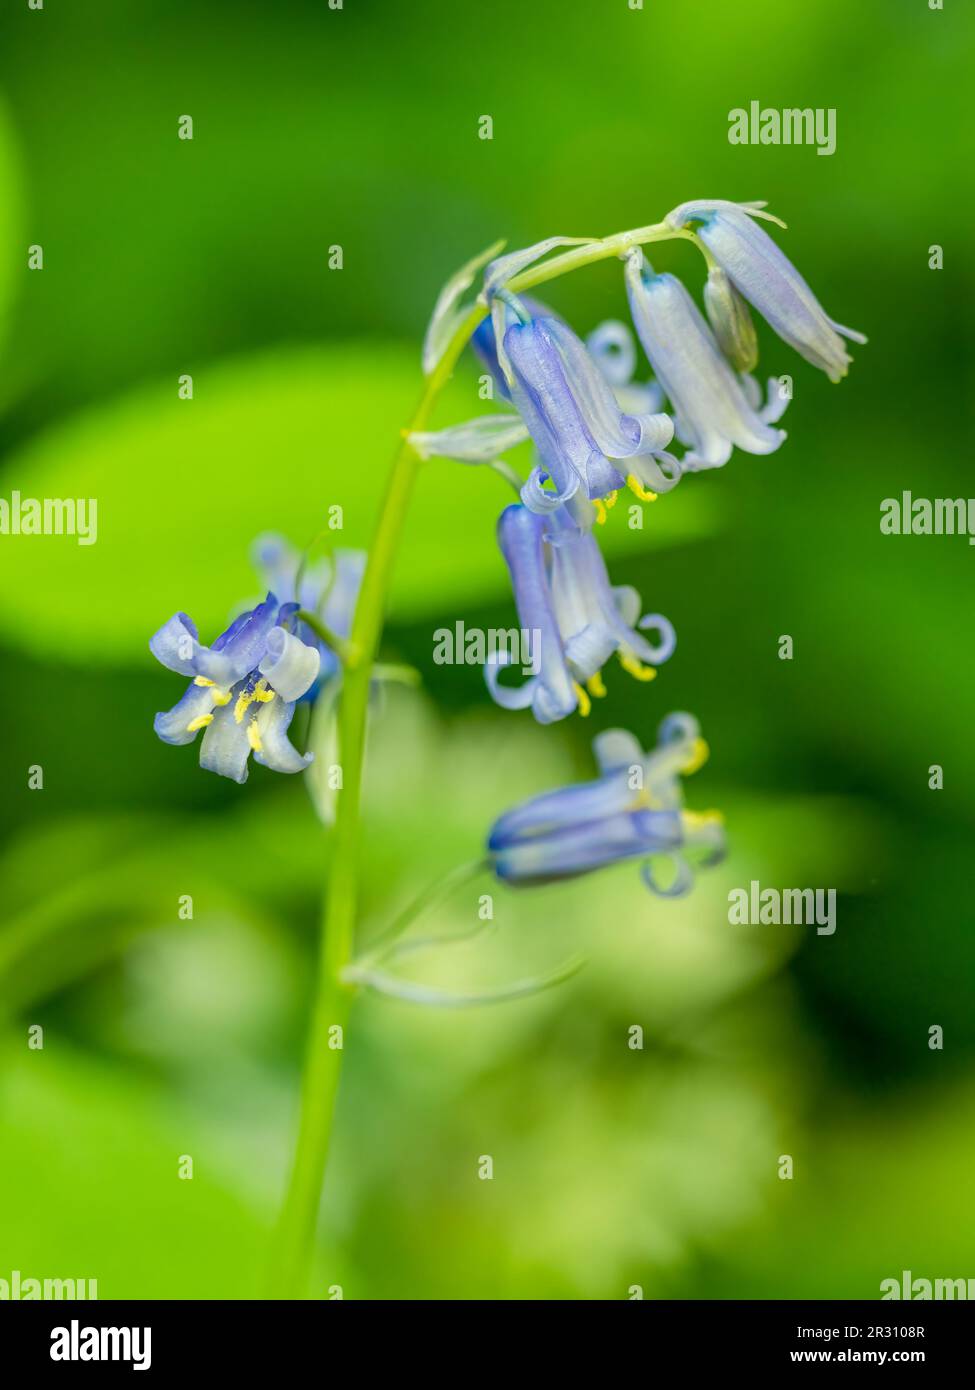 Wunderschöne duftende Bluebell-Blumen (Hyacinthoides non-scripta), fotografiert vor einem sanften grünen Hintergrund Stockfoto